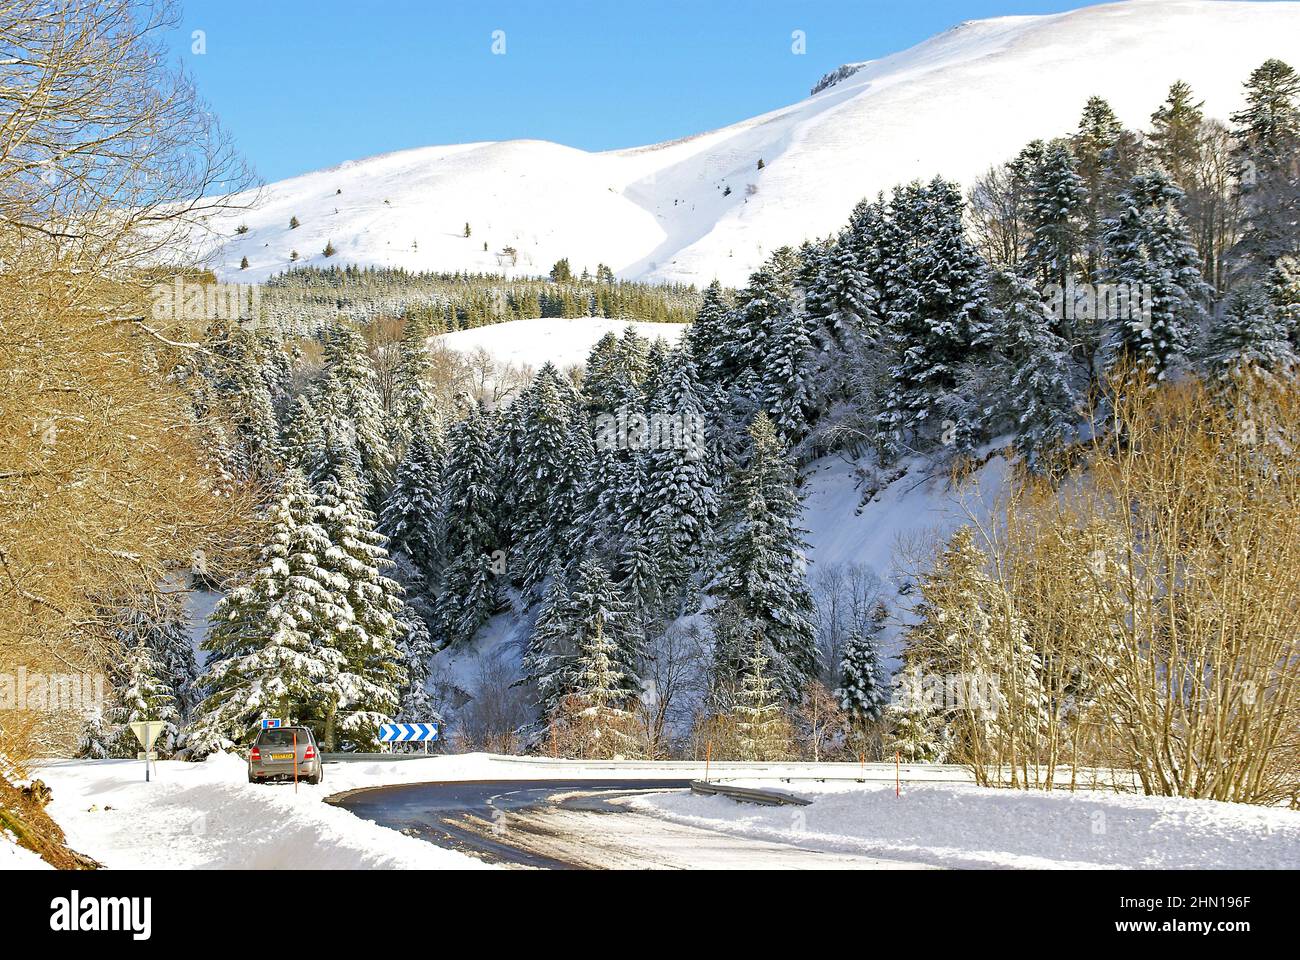 A winter wonderland near Col de Guéry, France Stock Photo